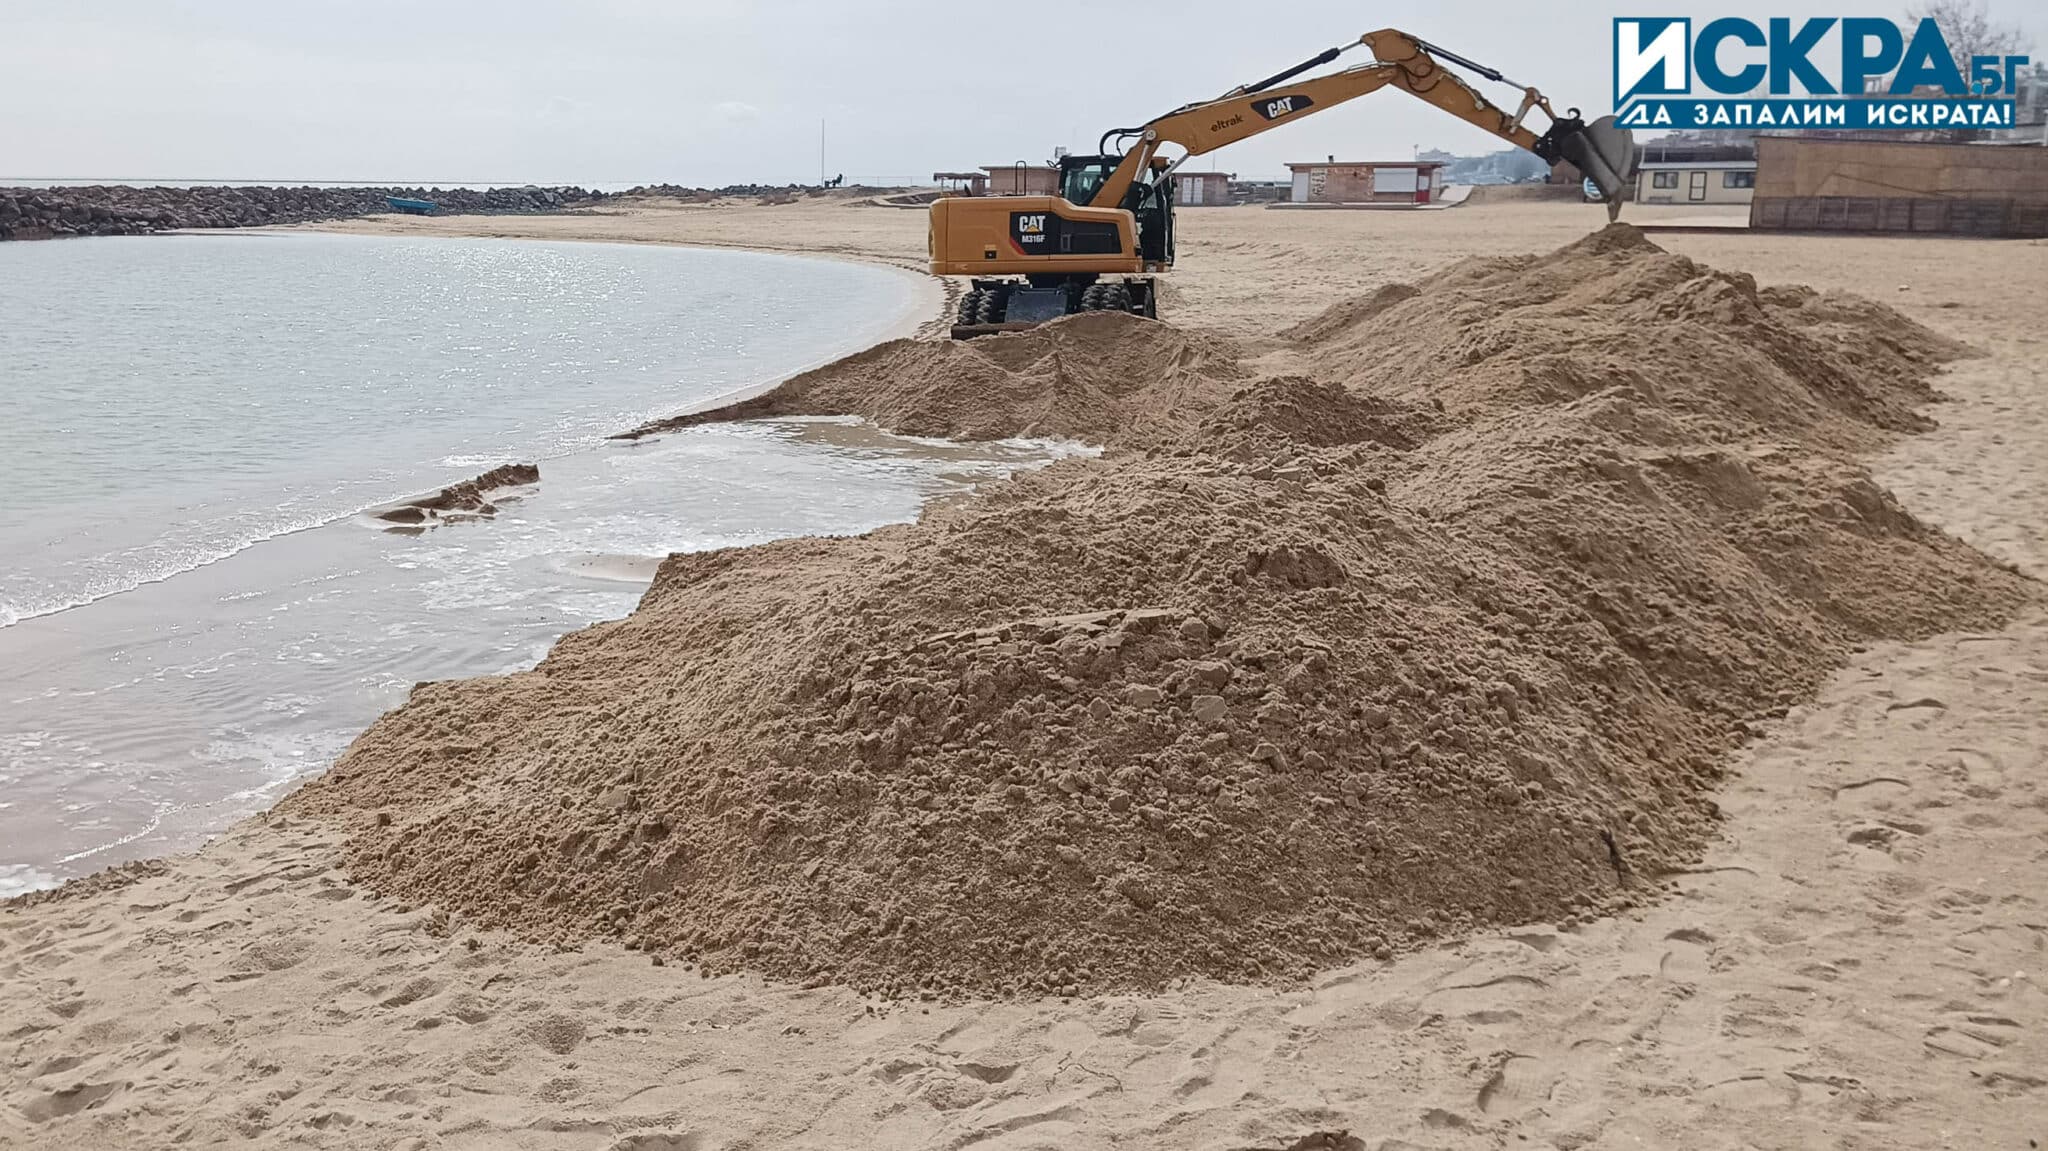 Багер копае и вдига диги на плаж Аурелия разположен между